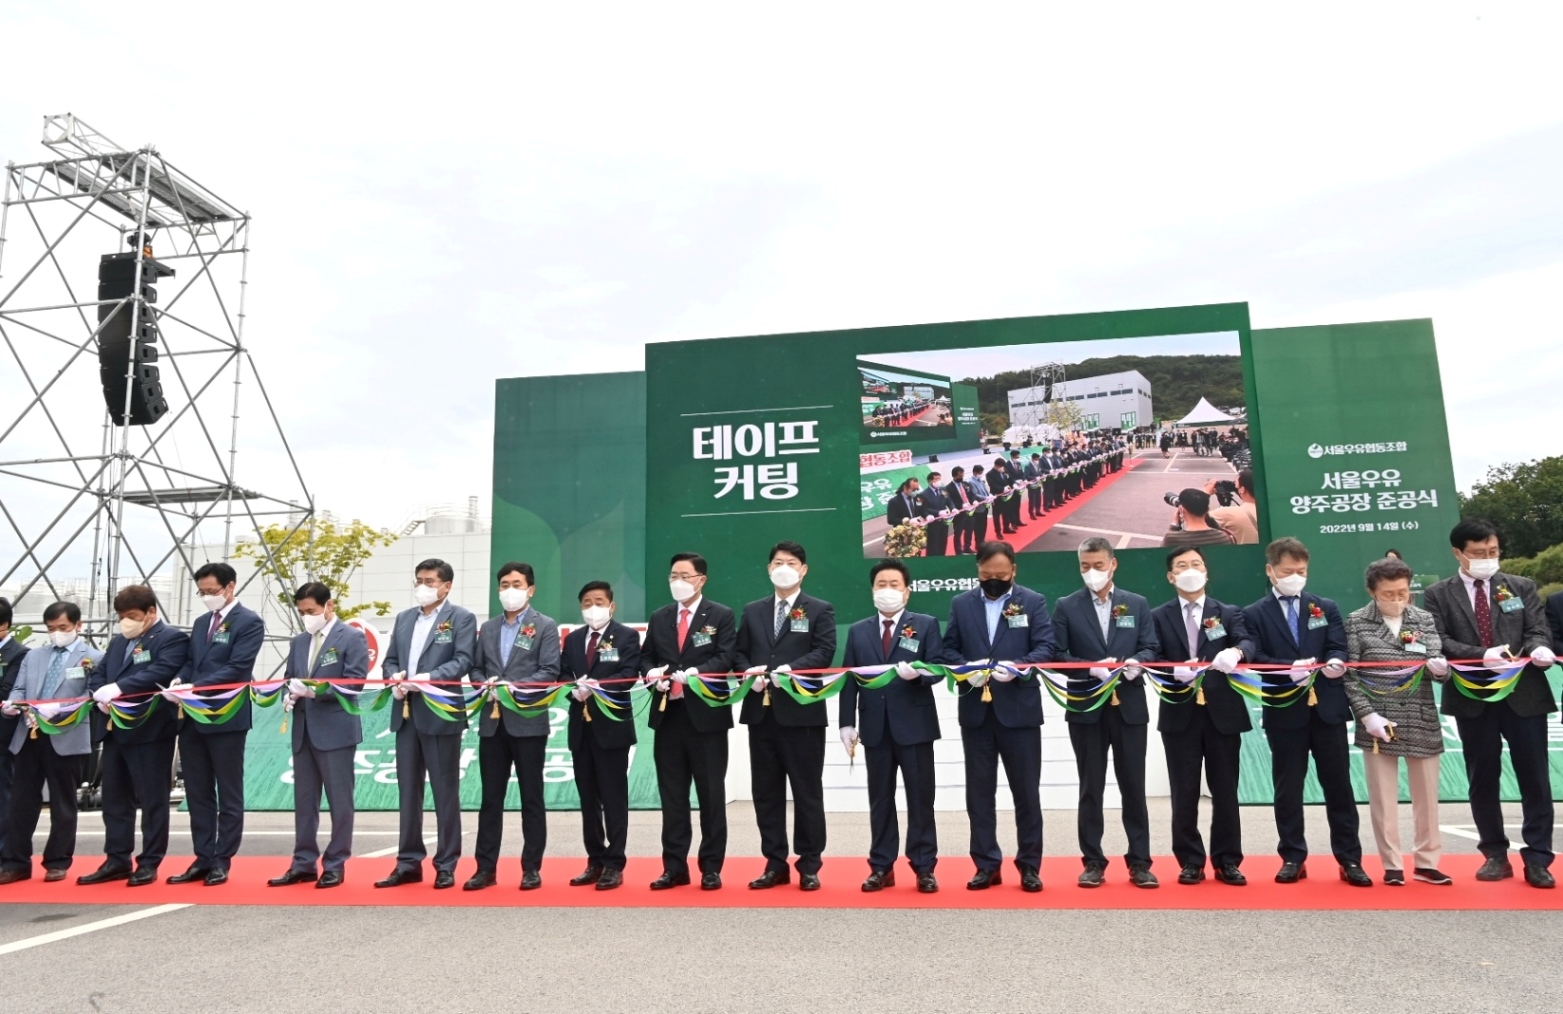 이한규 행정2부지사, 아시아 최대 규모 ‘서울우유 양주 신공장’ 준공식 참석